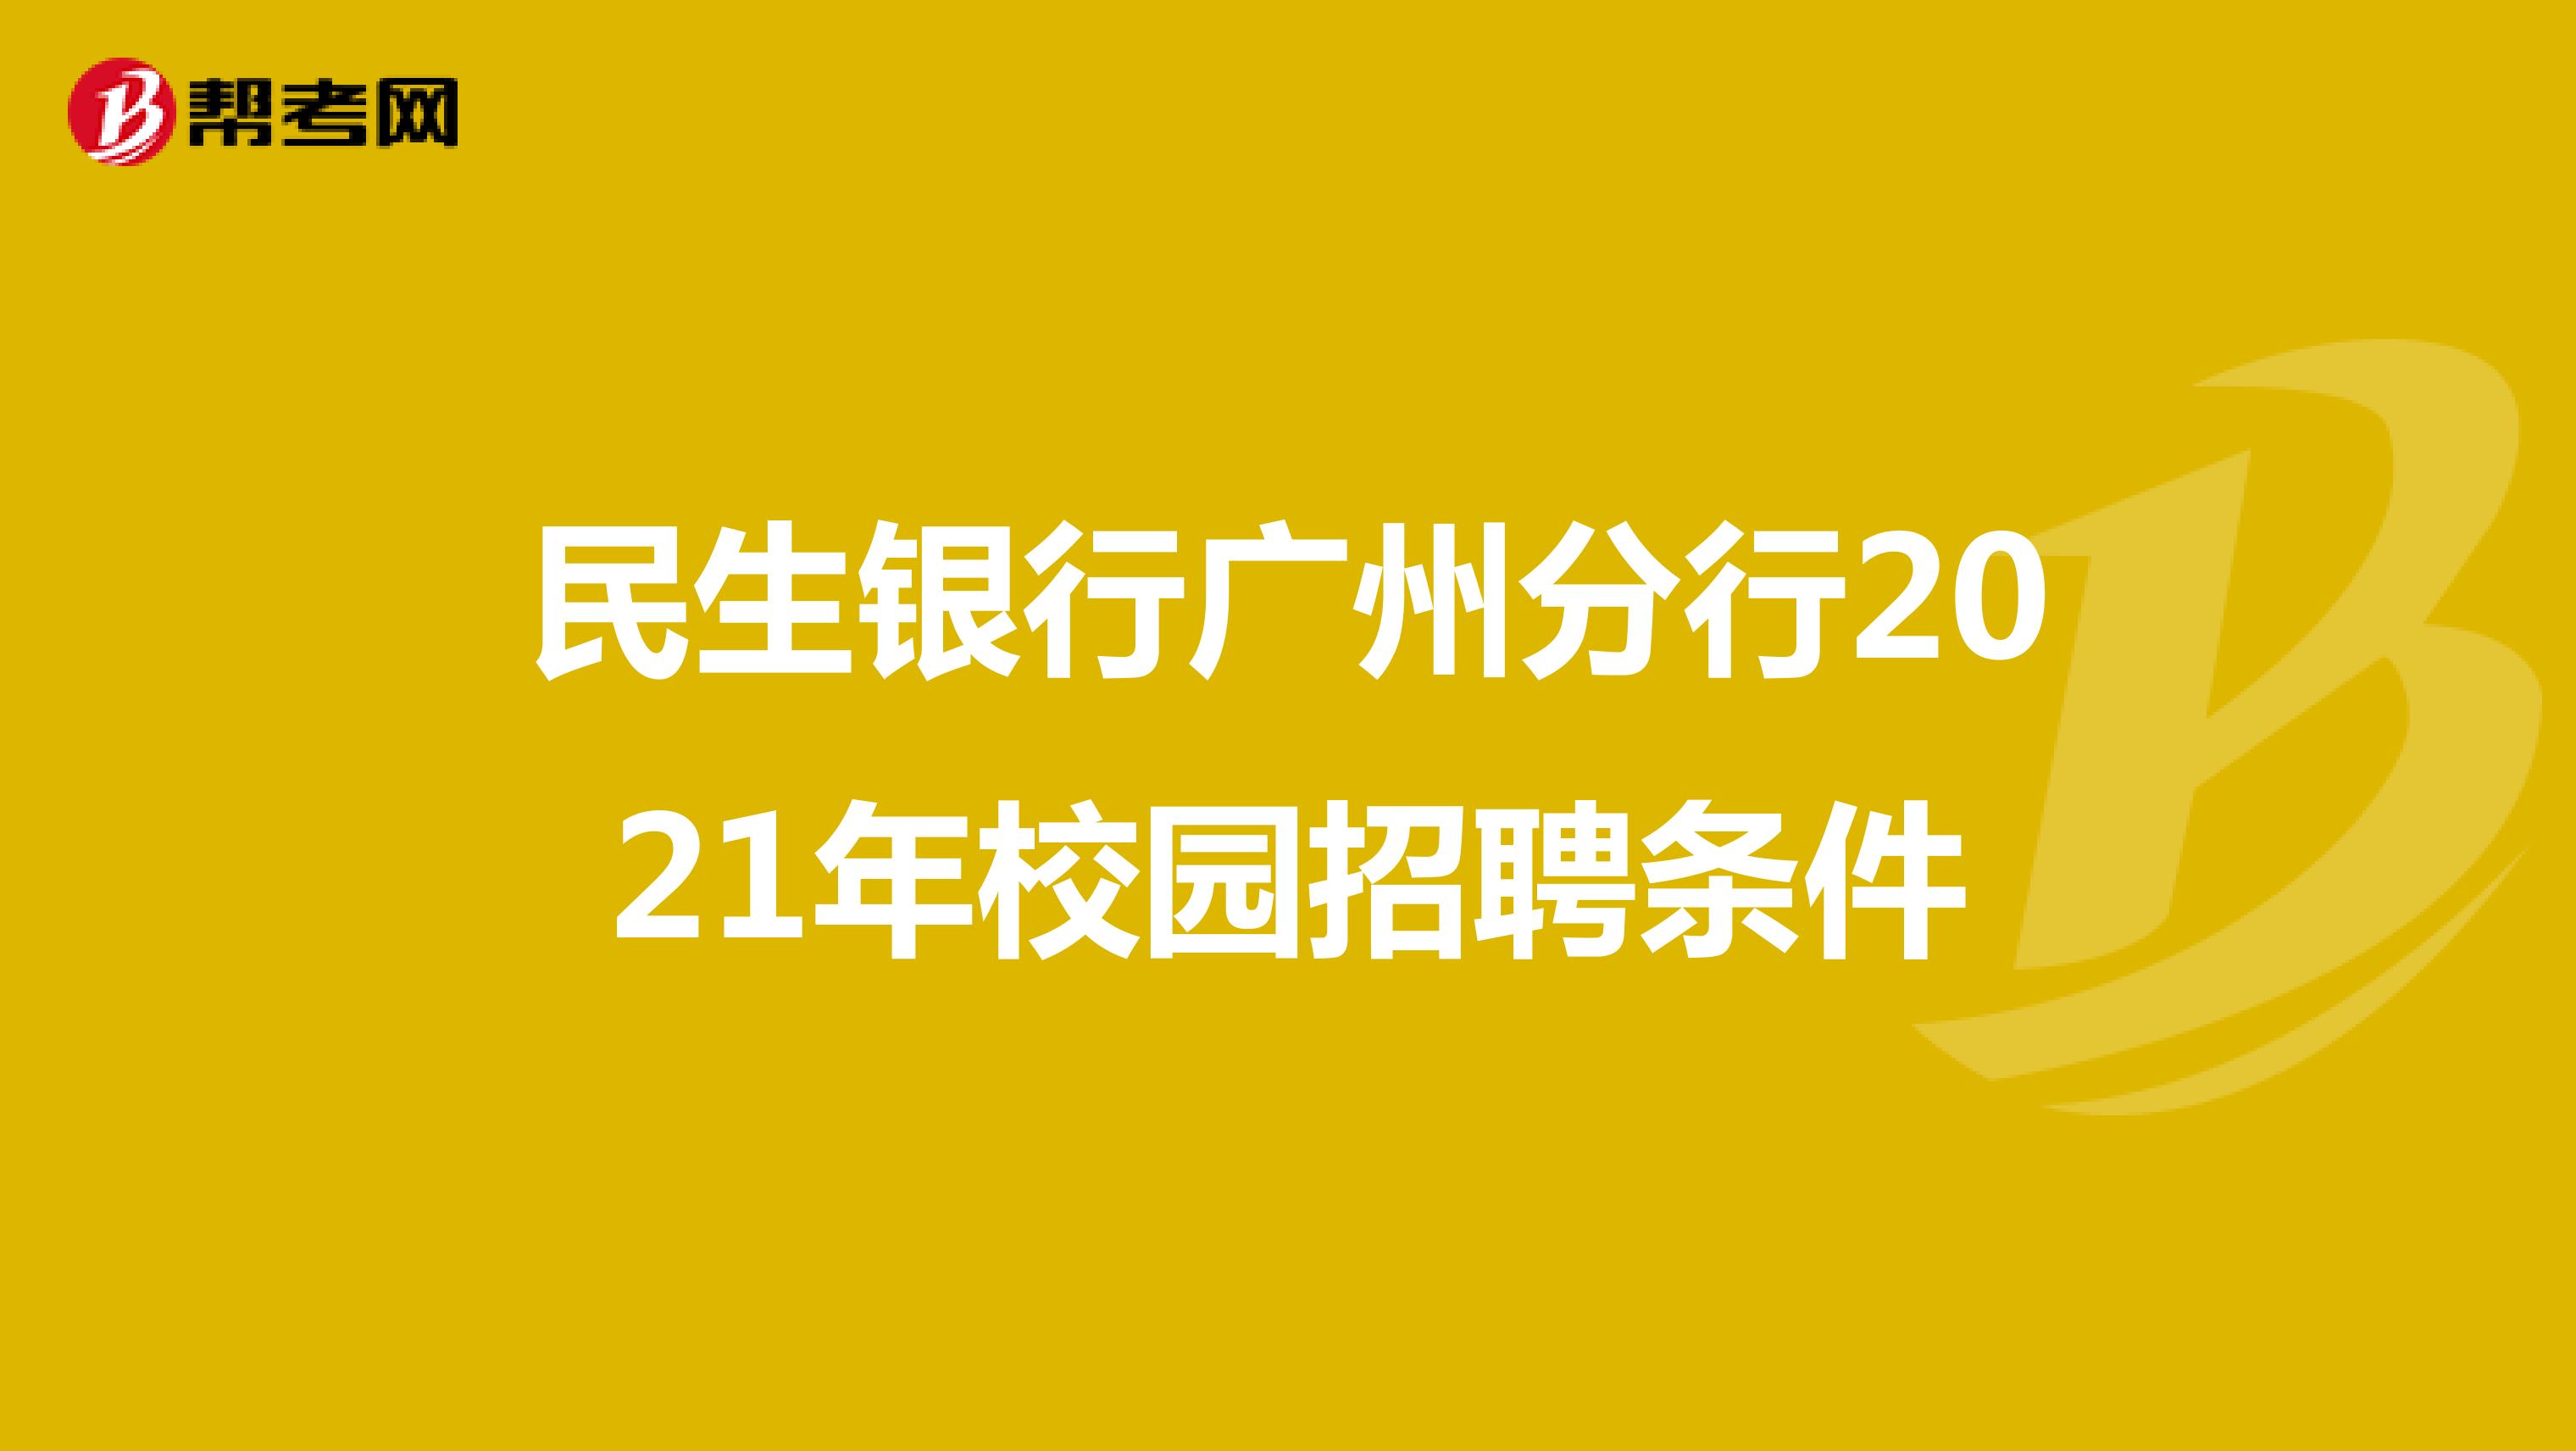 民生银行广州分行2021年校园招聘条件